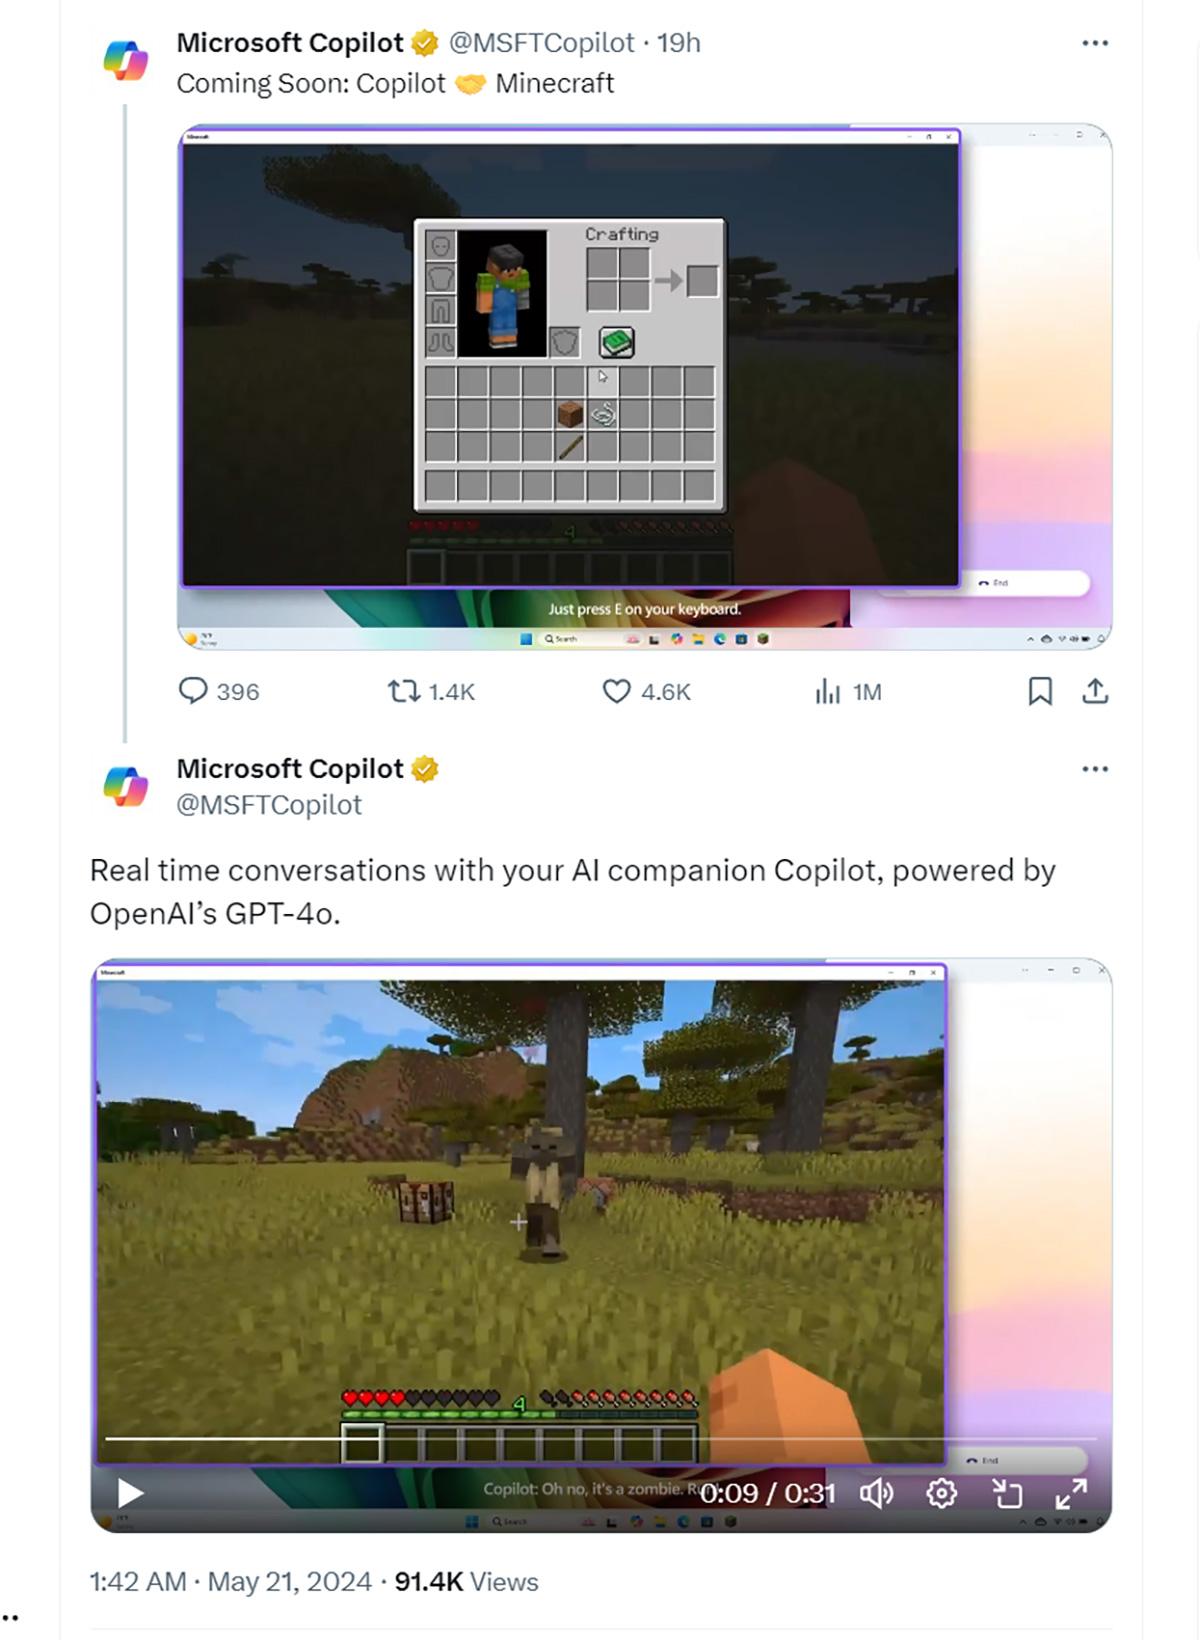 Microsoft sẽ nhúng AI Copilot vào Minecraft để hỗ trợ theo thời gian thực